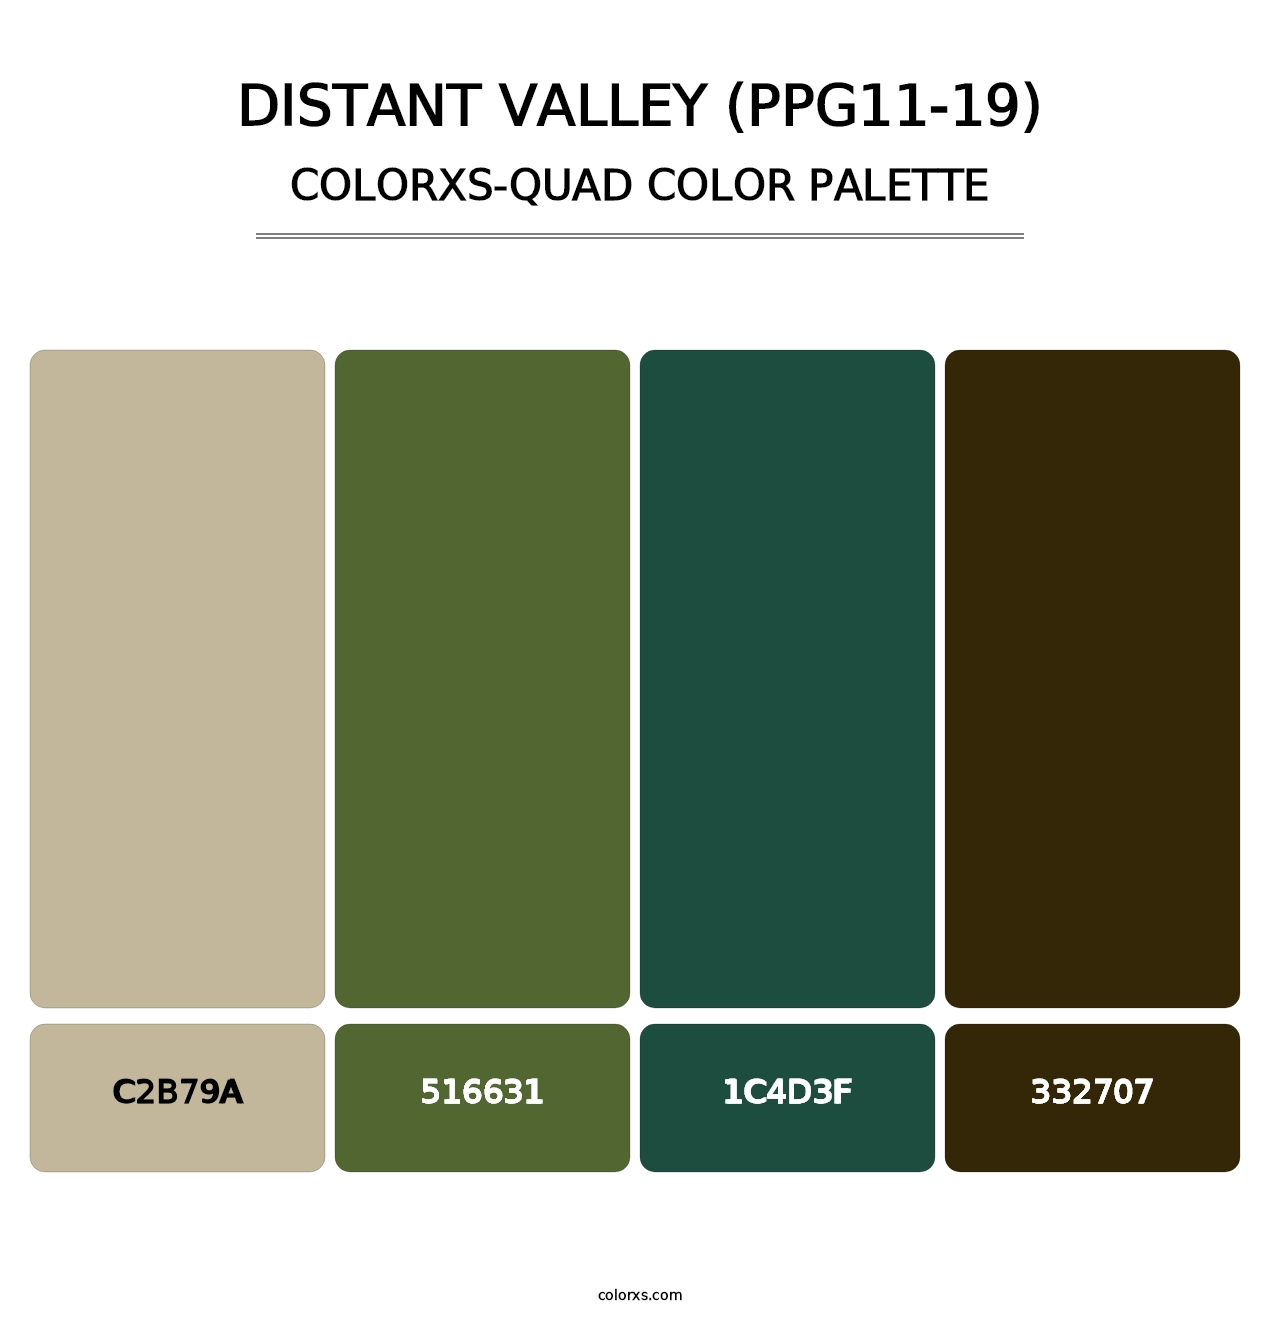 Distant Valley (PPG11-19) - Colorxs Quad Palette